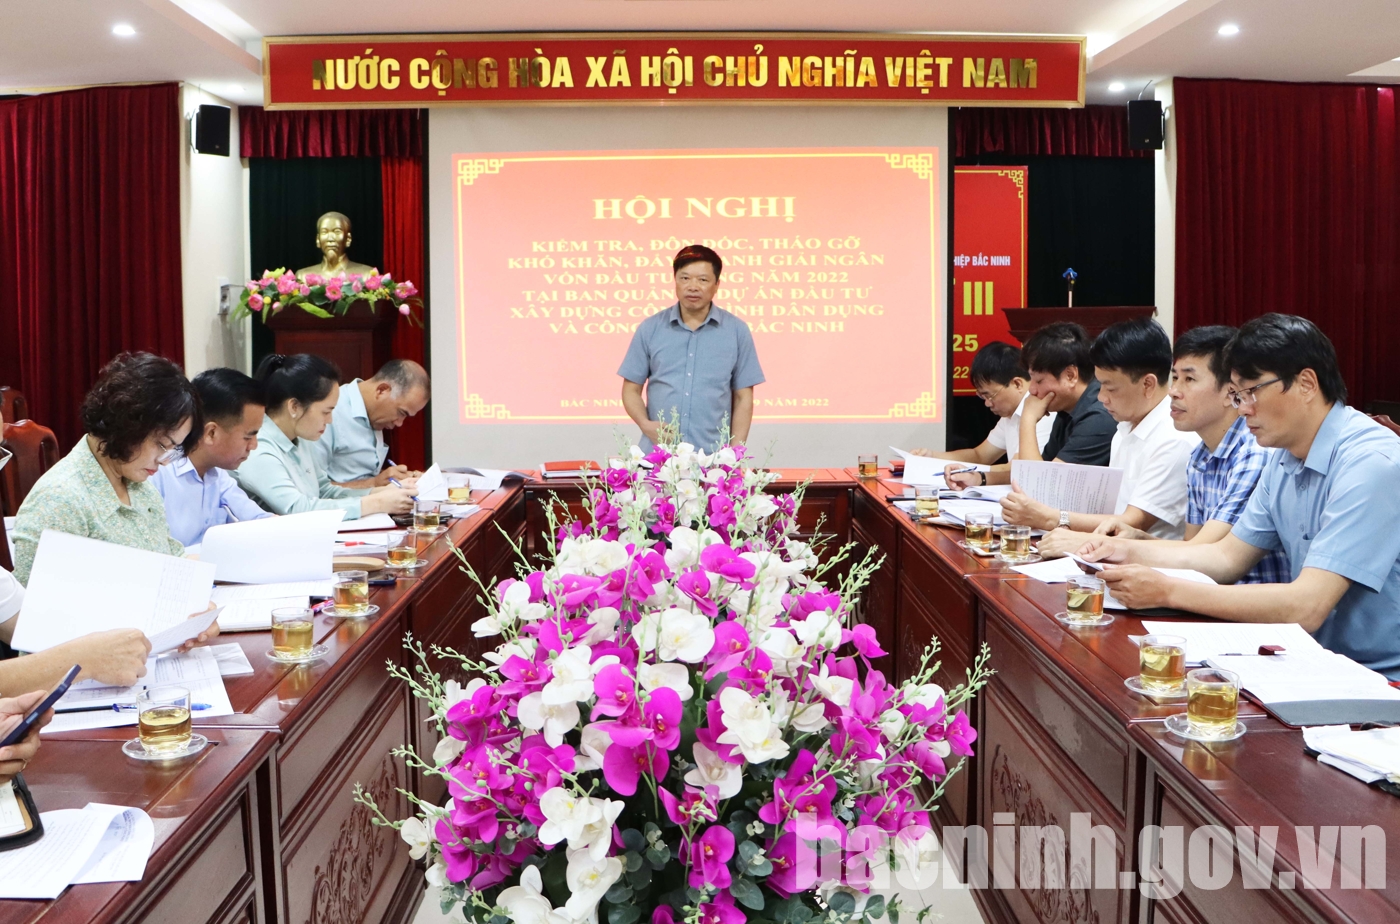 Phó Chủ tịch UBND tỉnh Đào Quang Khải làm việc với Ban Quản lý dự án đầu tư công trình dân dụng và công nghiệp Bắc Ninh